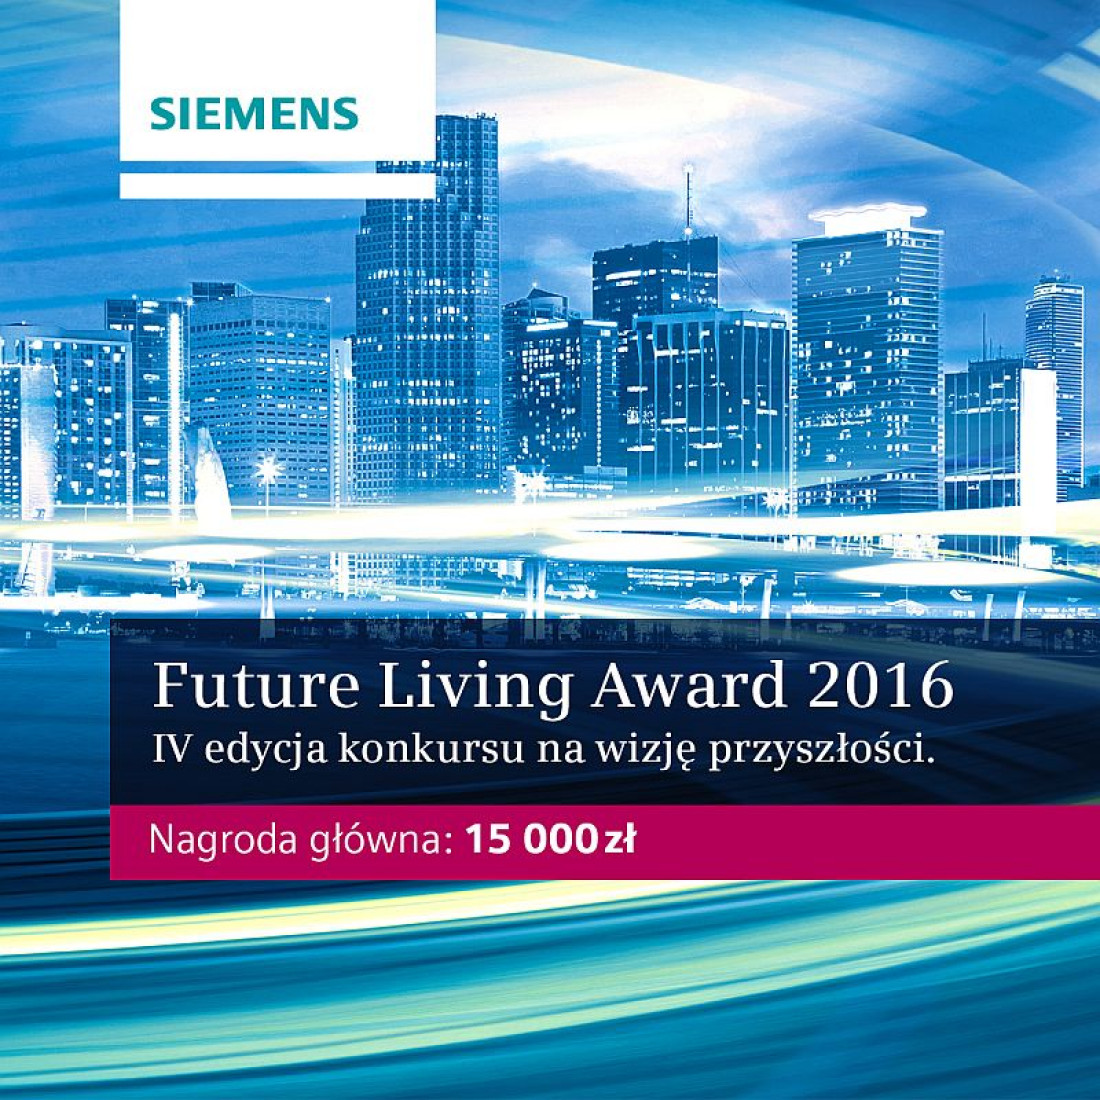 Hydra najlepszym projektem czwartej edycji Siemens Future Living Award